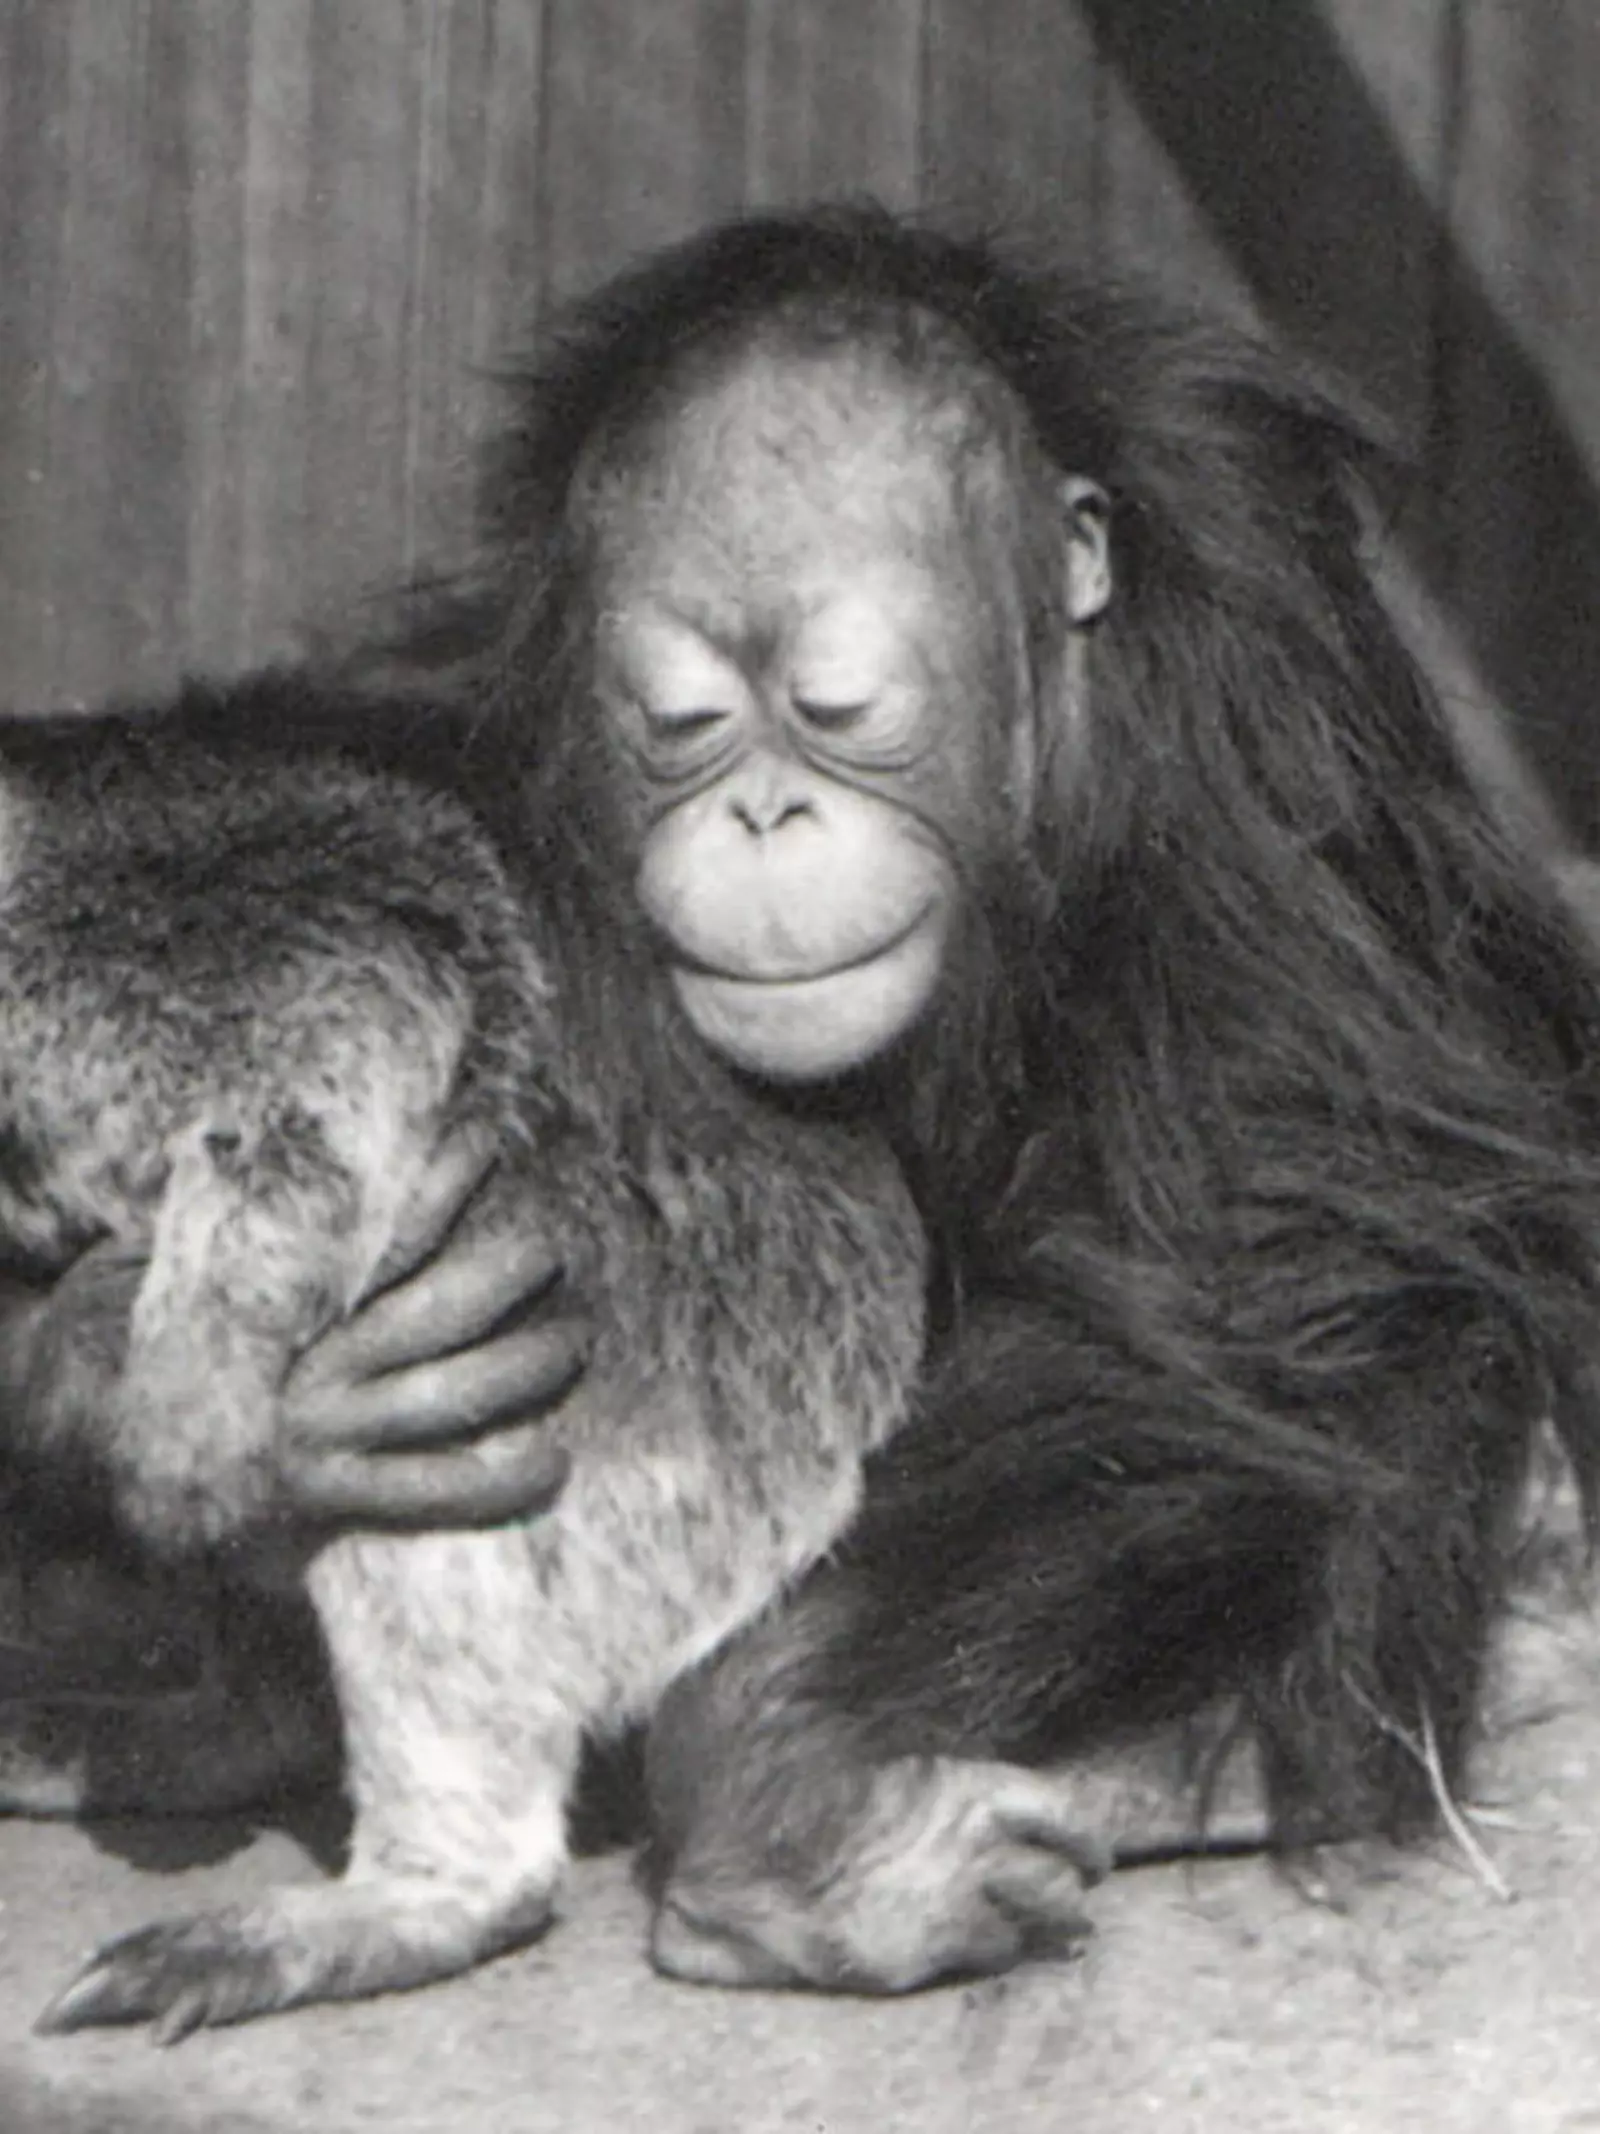 Orangutan and Tree Kangaroo, 1927